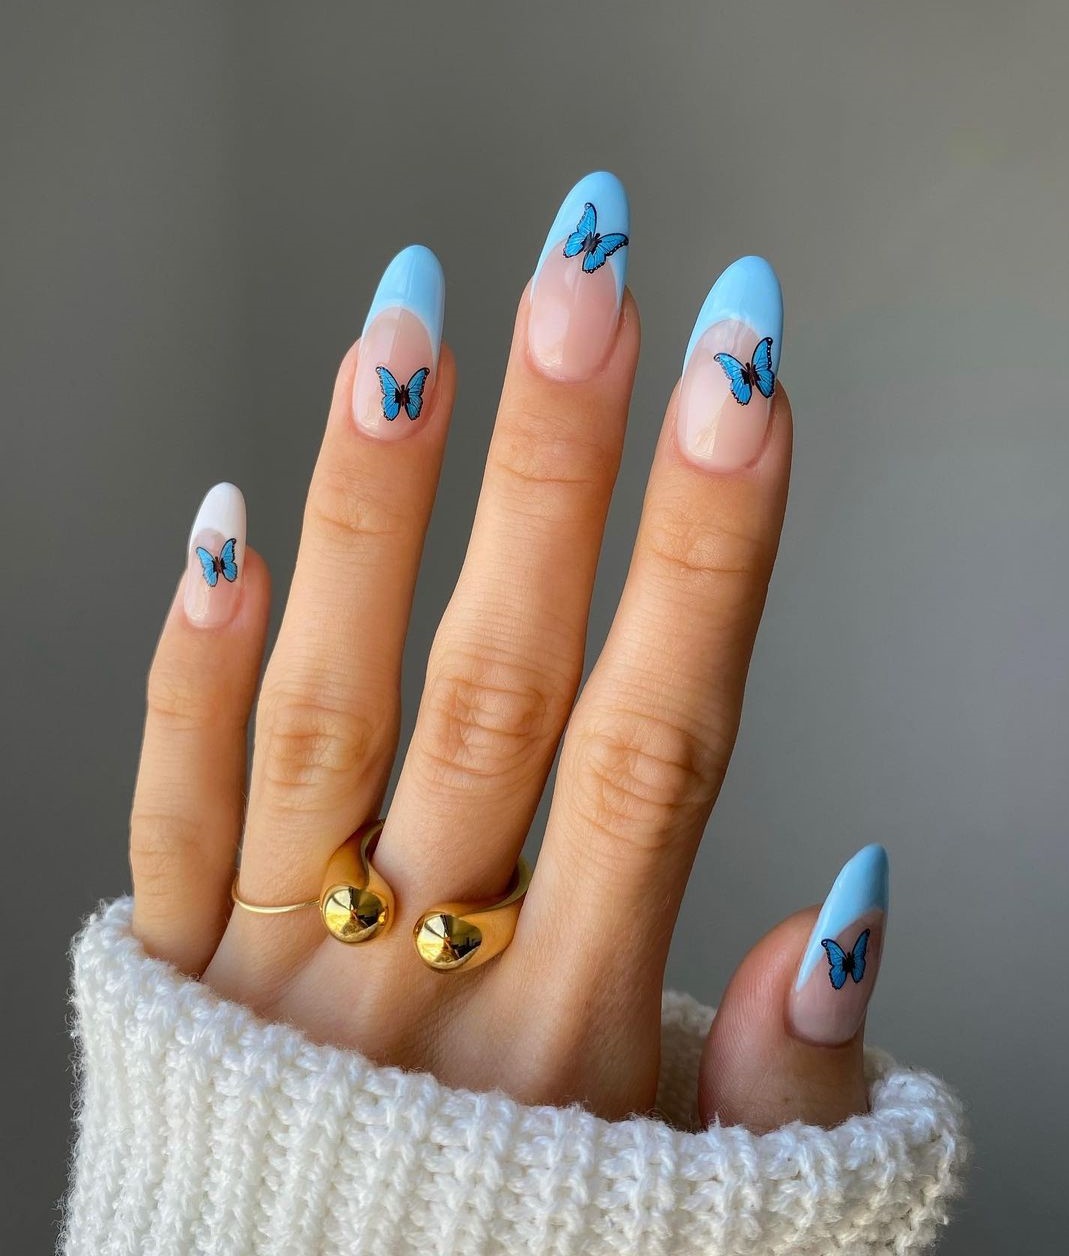 Lange ovale Franse nagels met blauwe vlinders